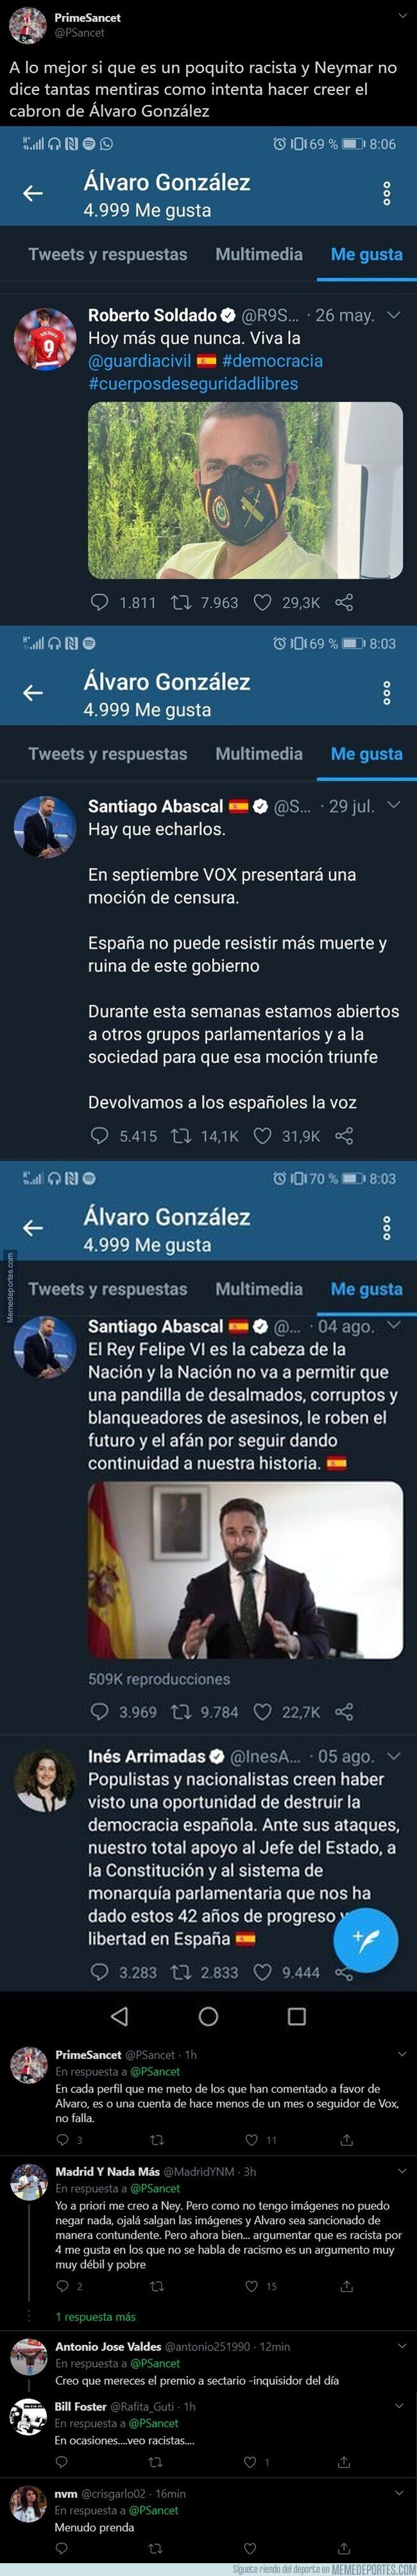 1115697 - Los polémicos 'me gusta' de Álvaro González en Twitter que podría dejar claro que si tiene ideas racistas y Neymar no miente